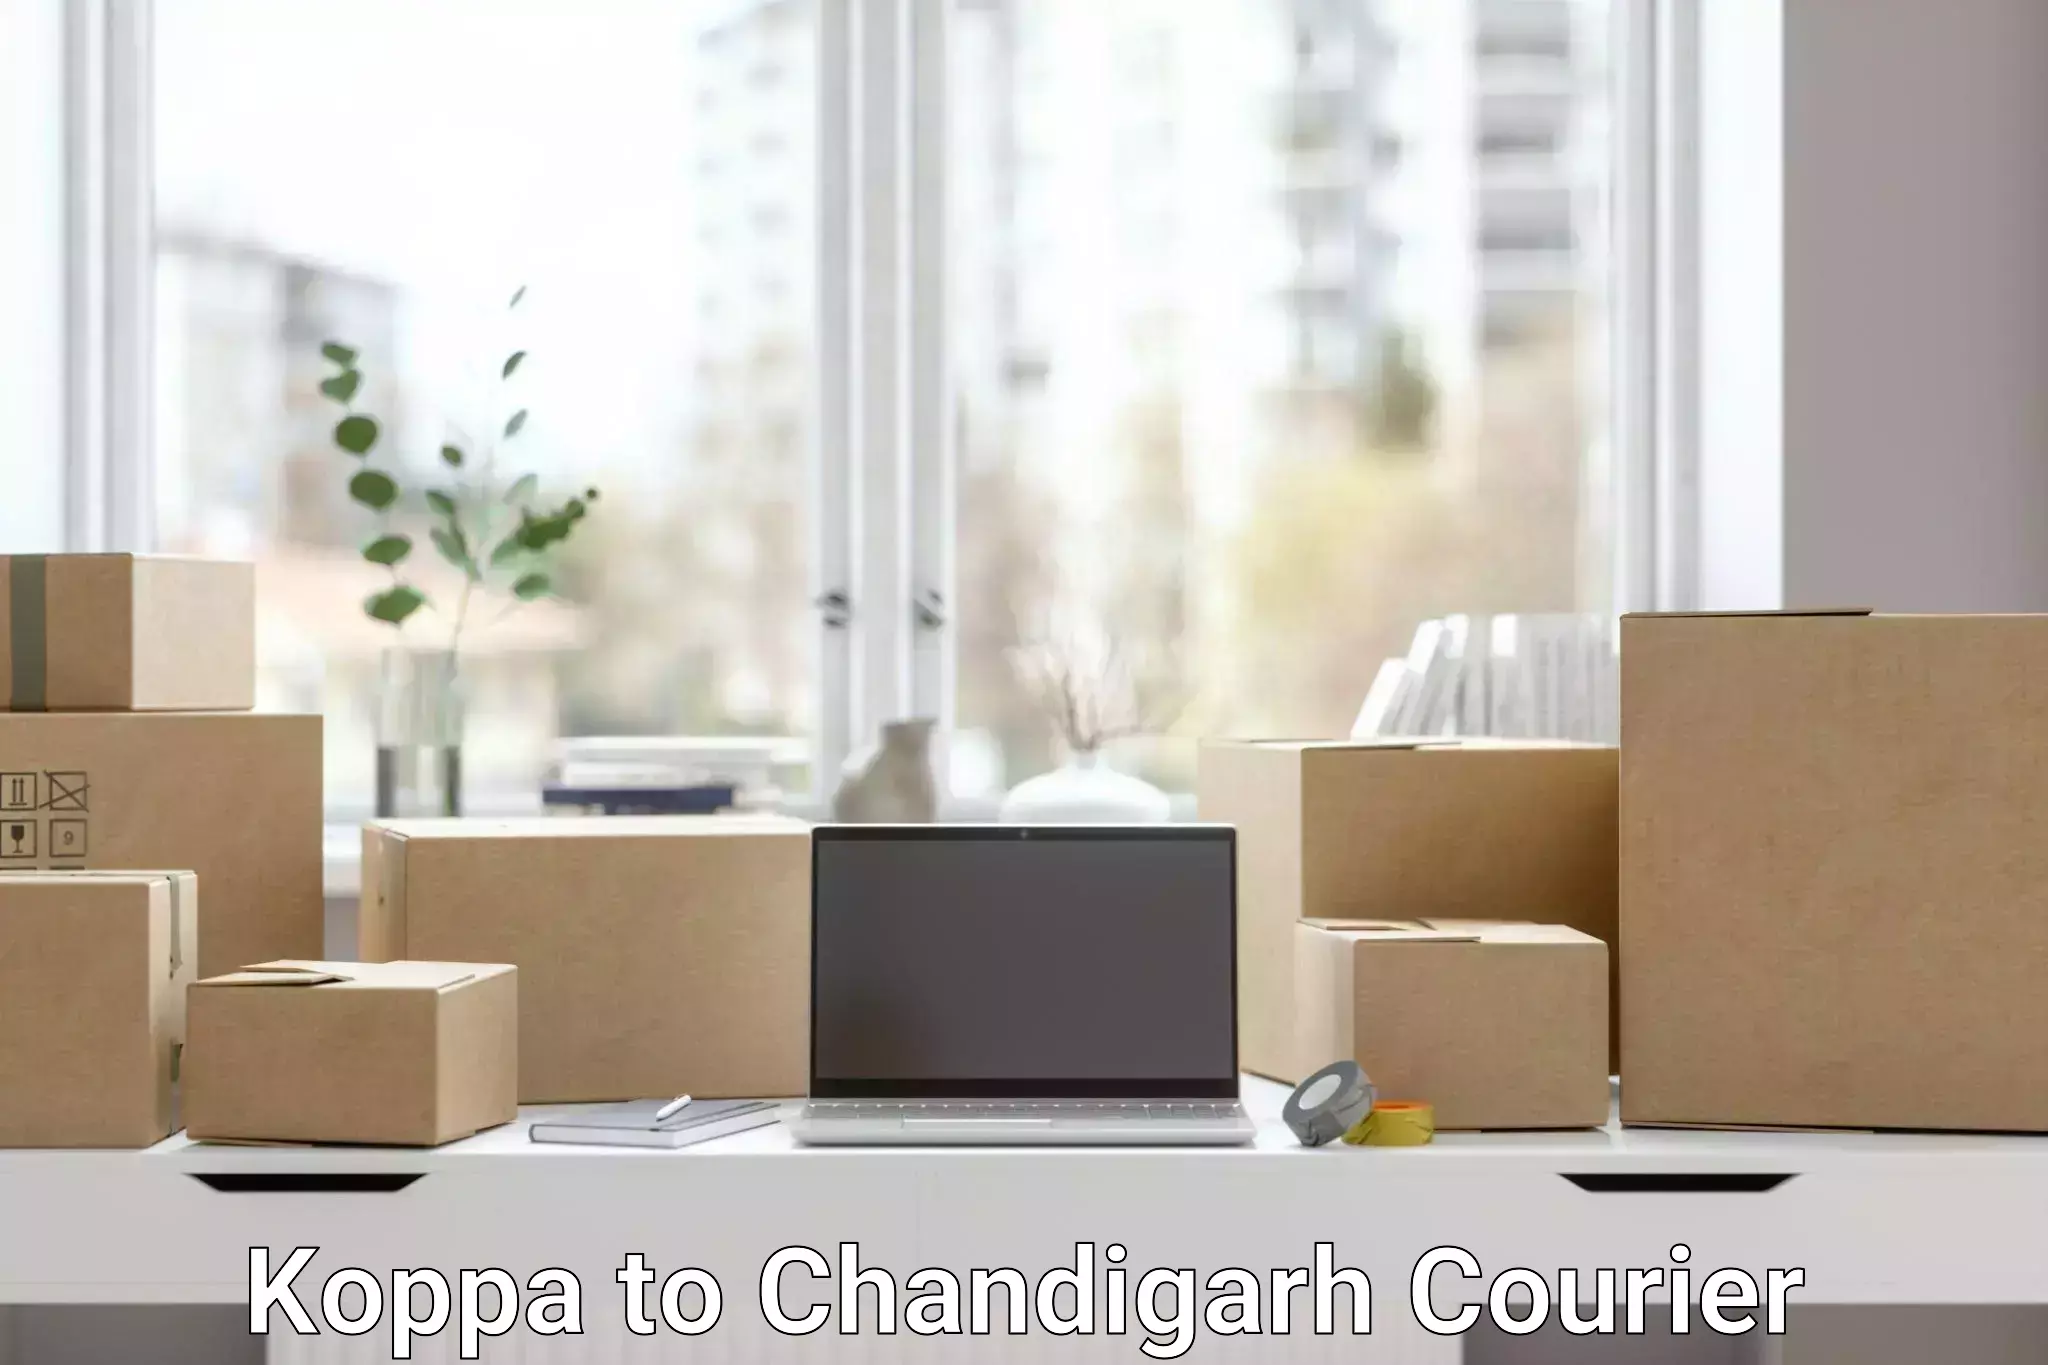 Urban courier service Koppa to Chandigarh